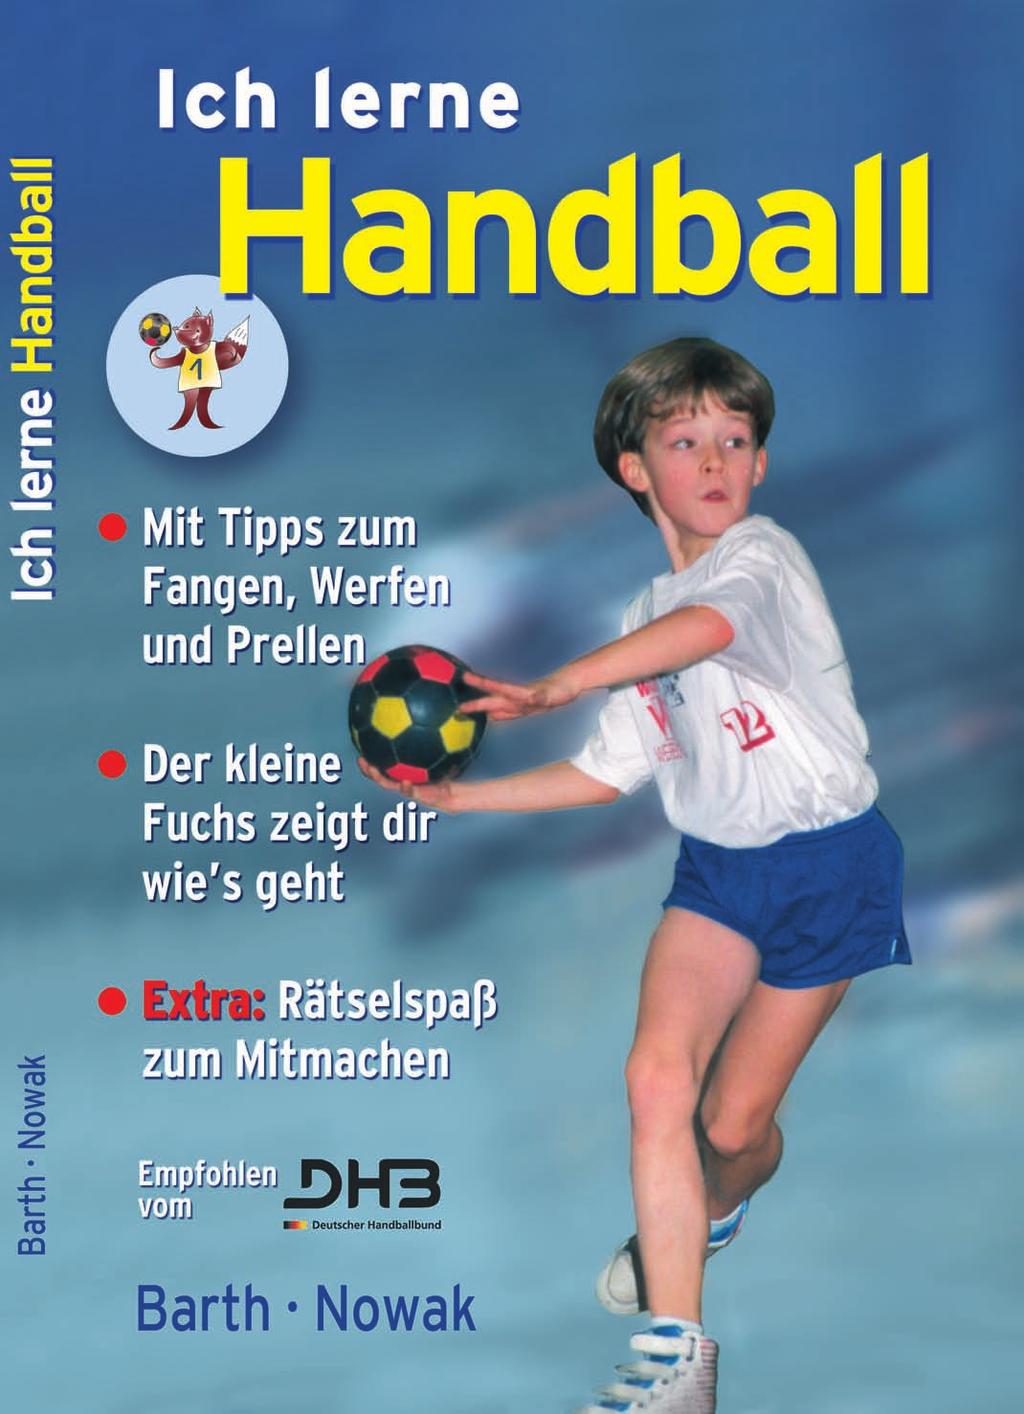 Gemeinsam mit deinen Freunden übst du dafür fleißig im Handballtraining.